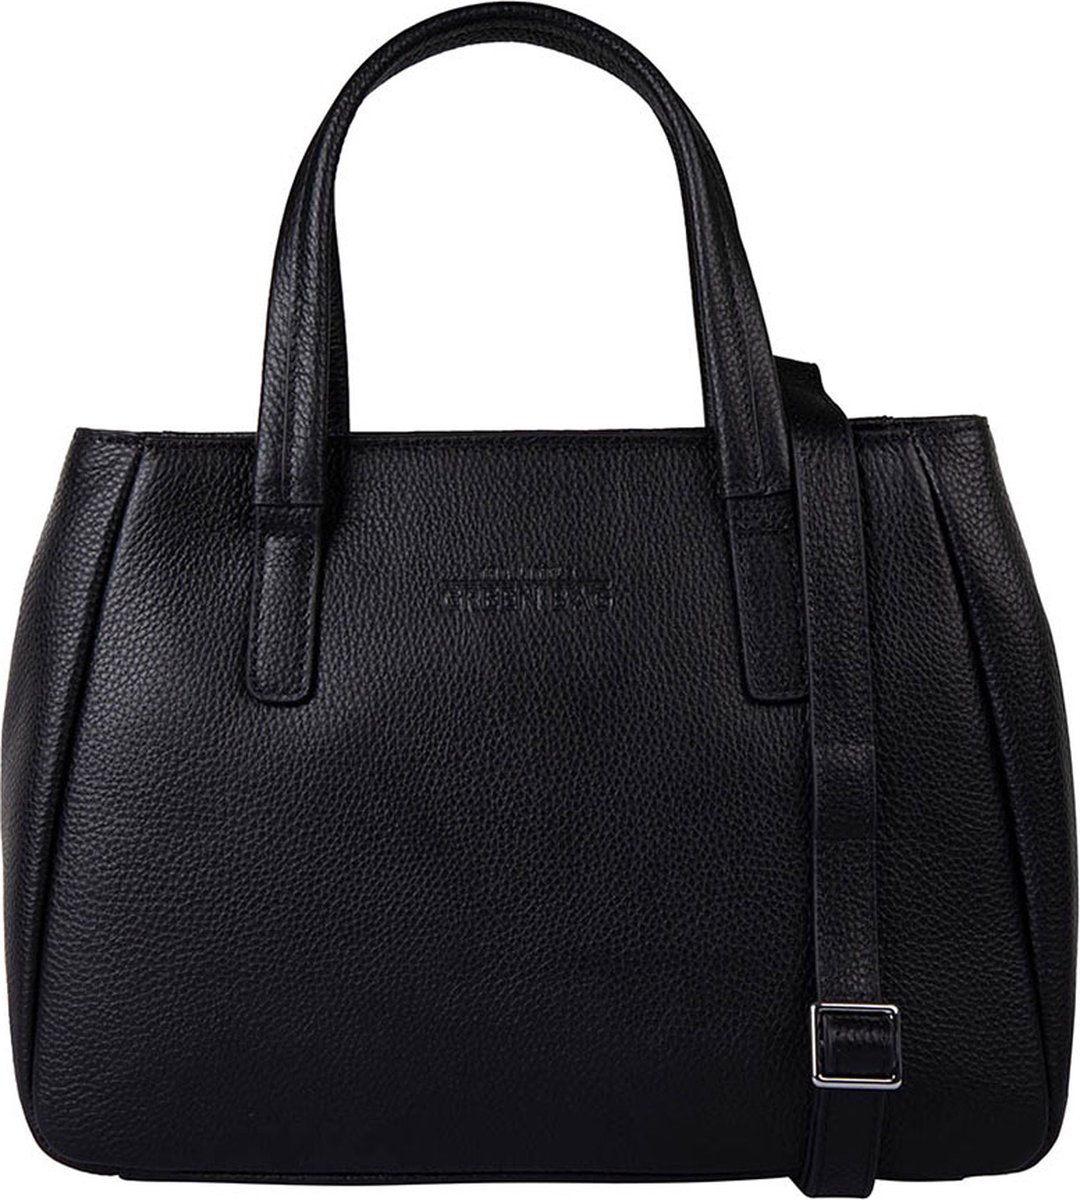 201164 Handbag Ilex Q3-22